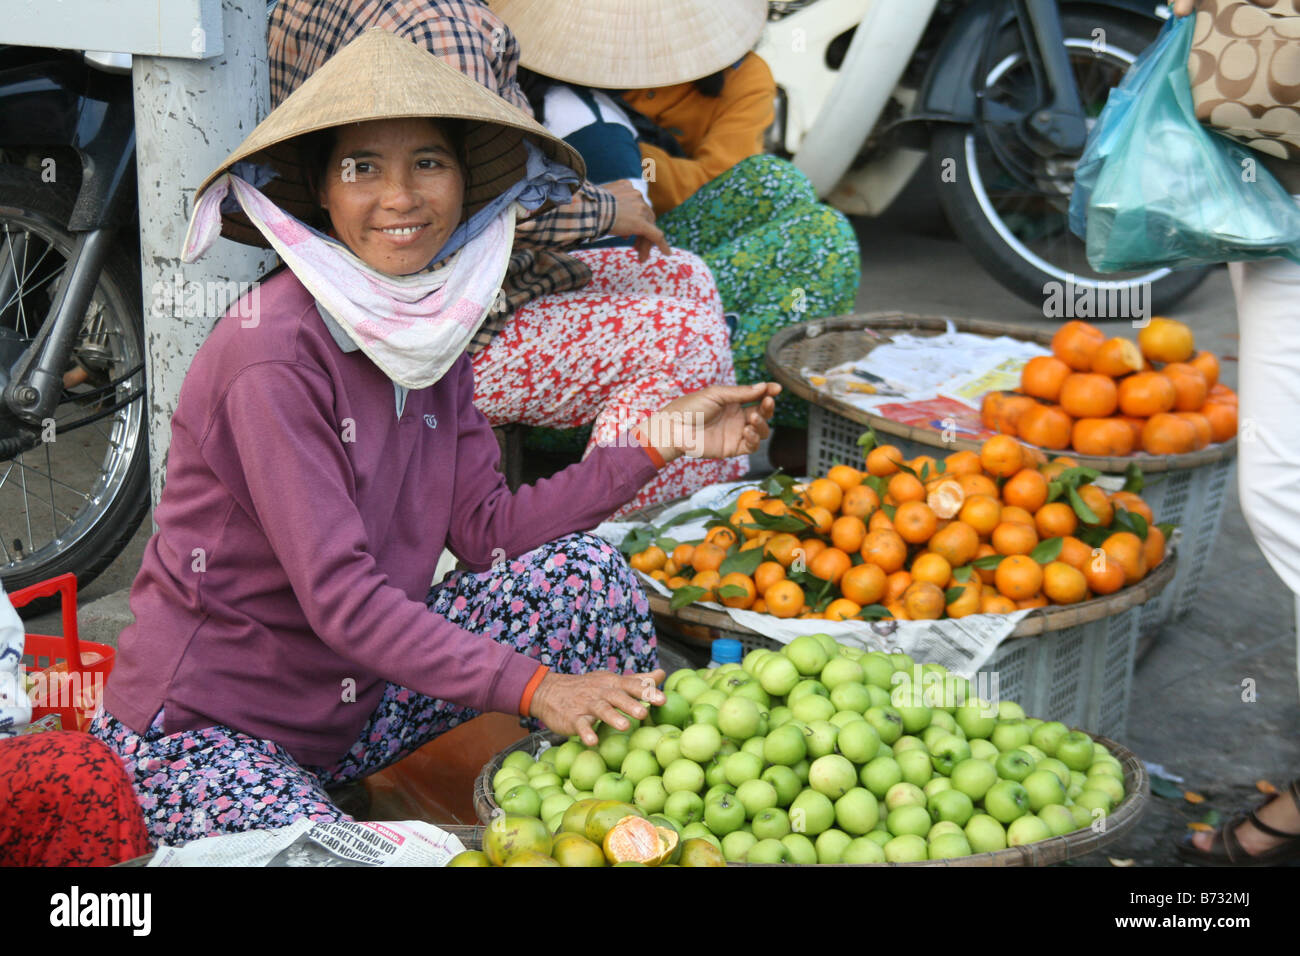 Trouver la photo d'une dame vietnamienne vente de fruits sur un marché à Hue, Vietnam. Banque D'Images